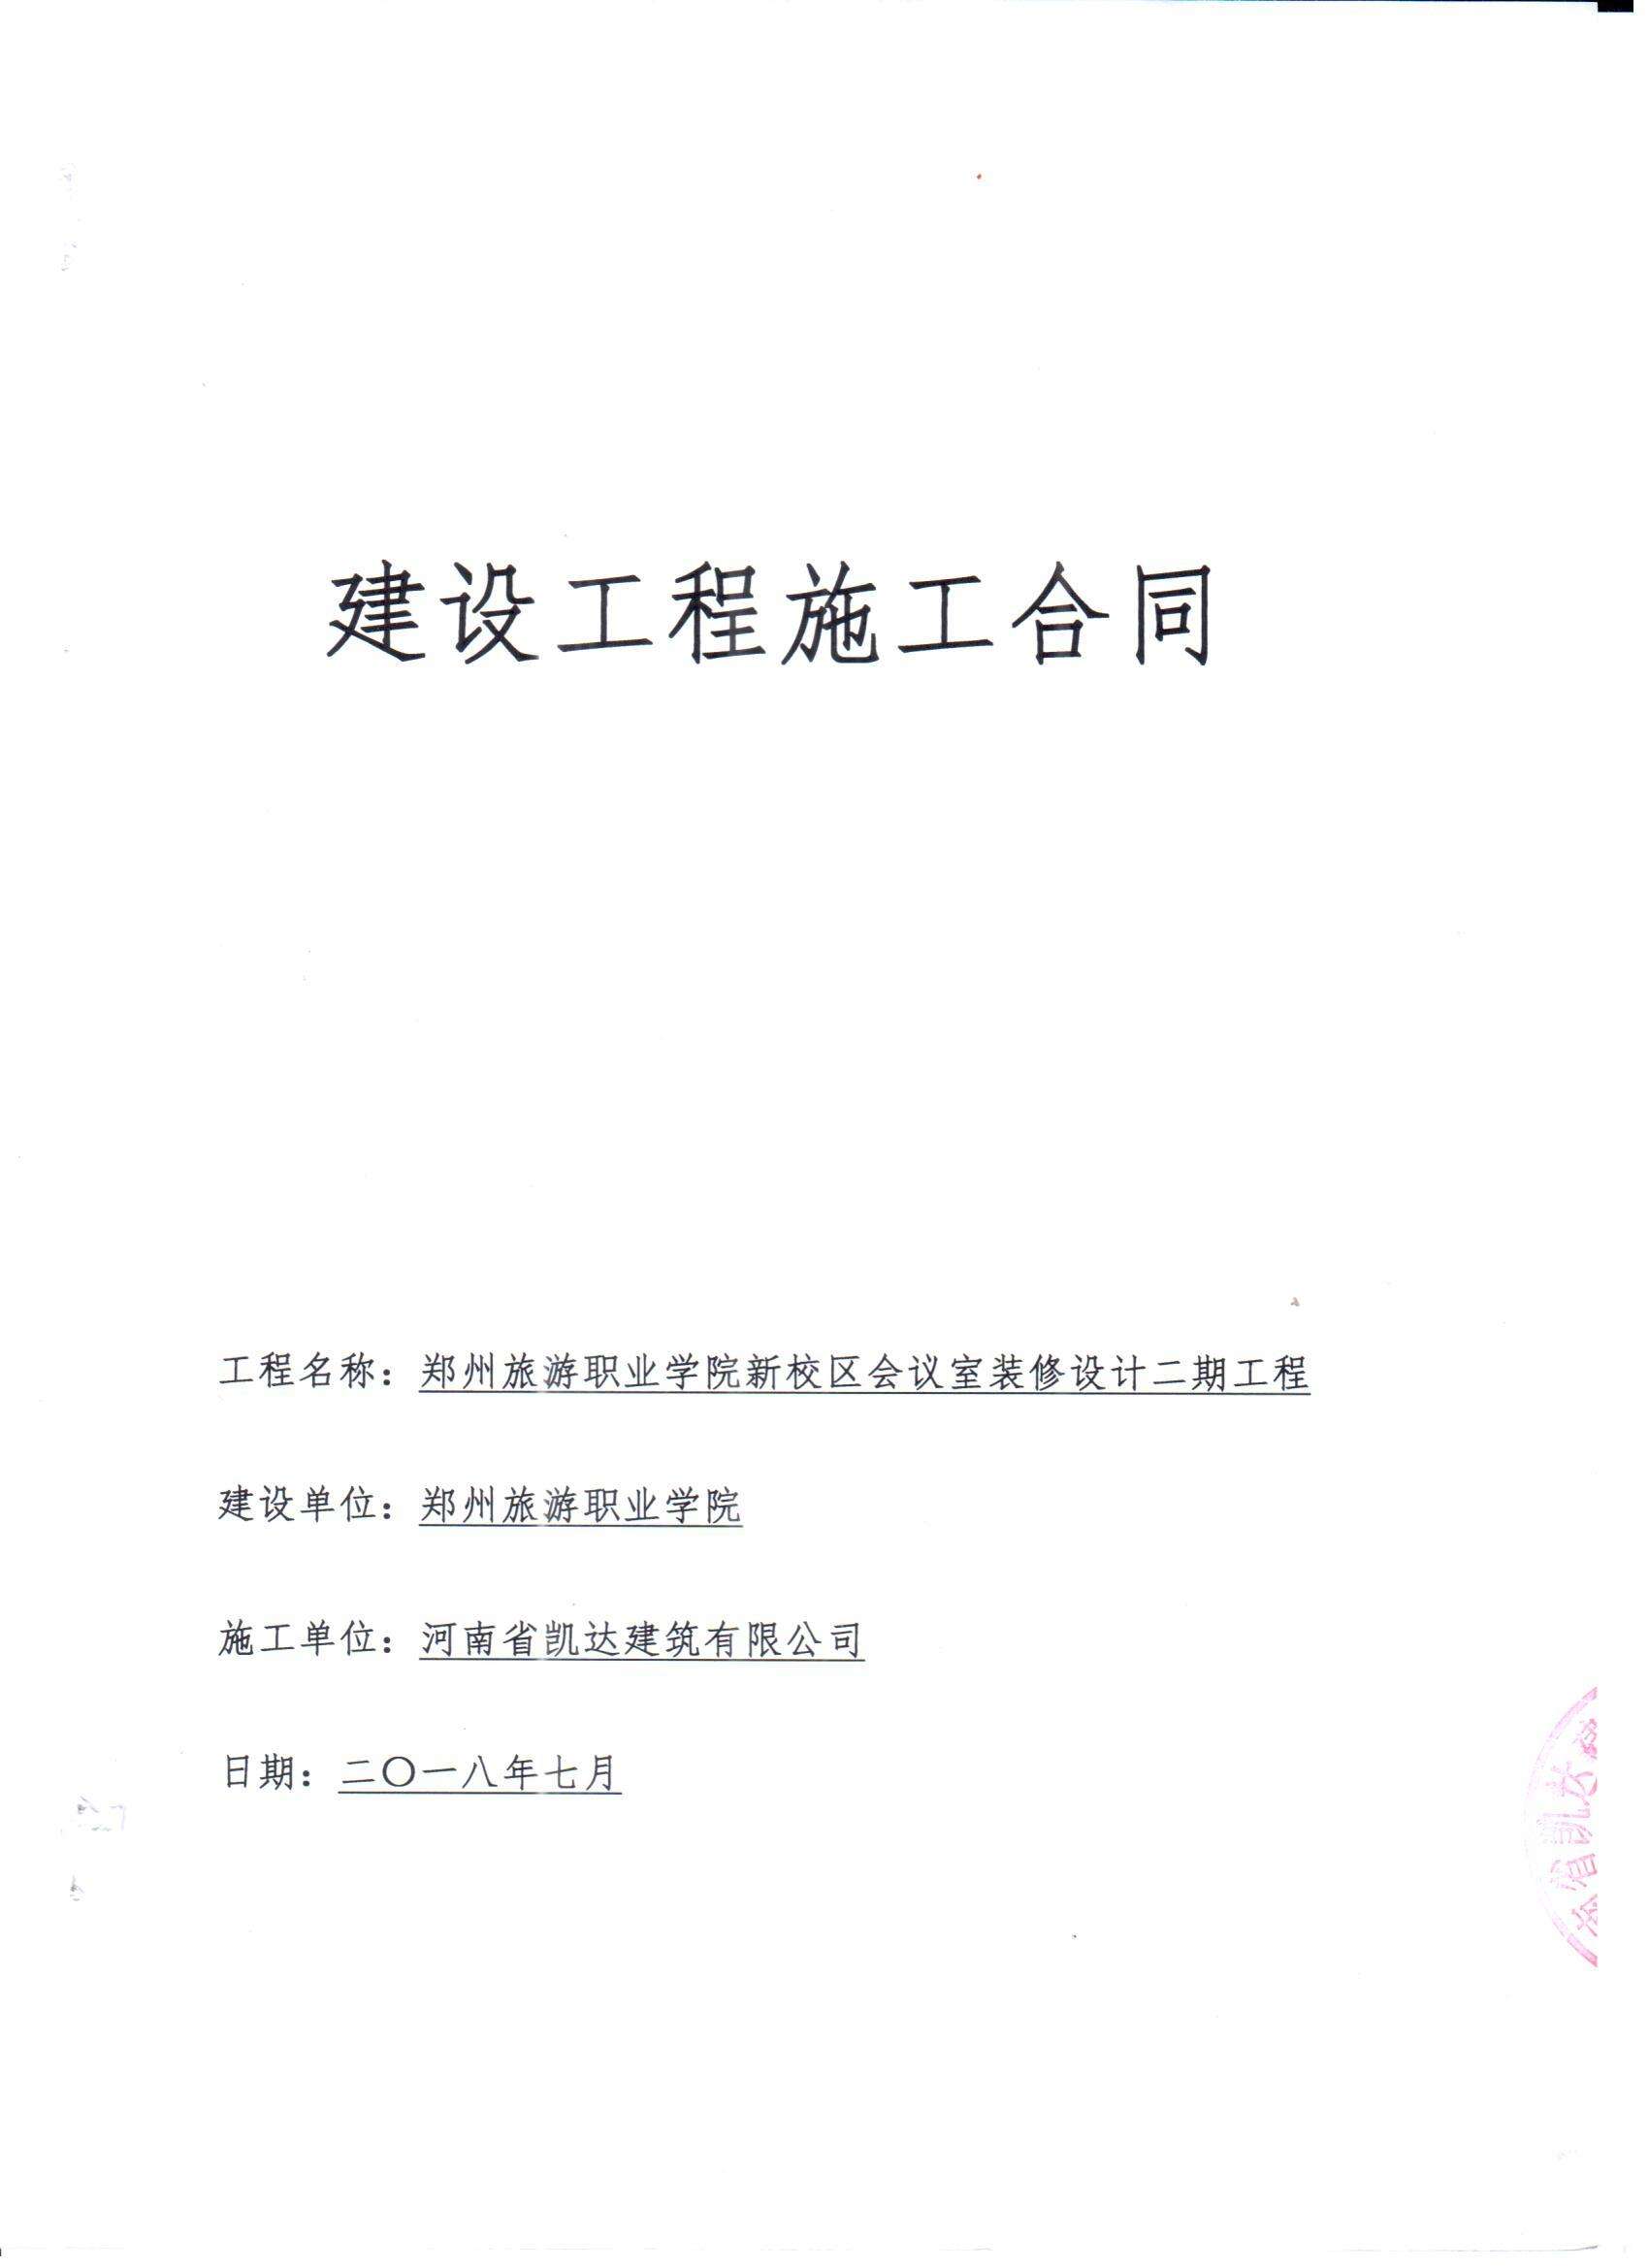 天津陆路港建设系列债权资产二期合同存证的简单介绍